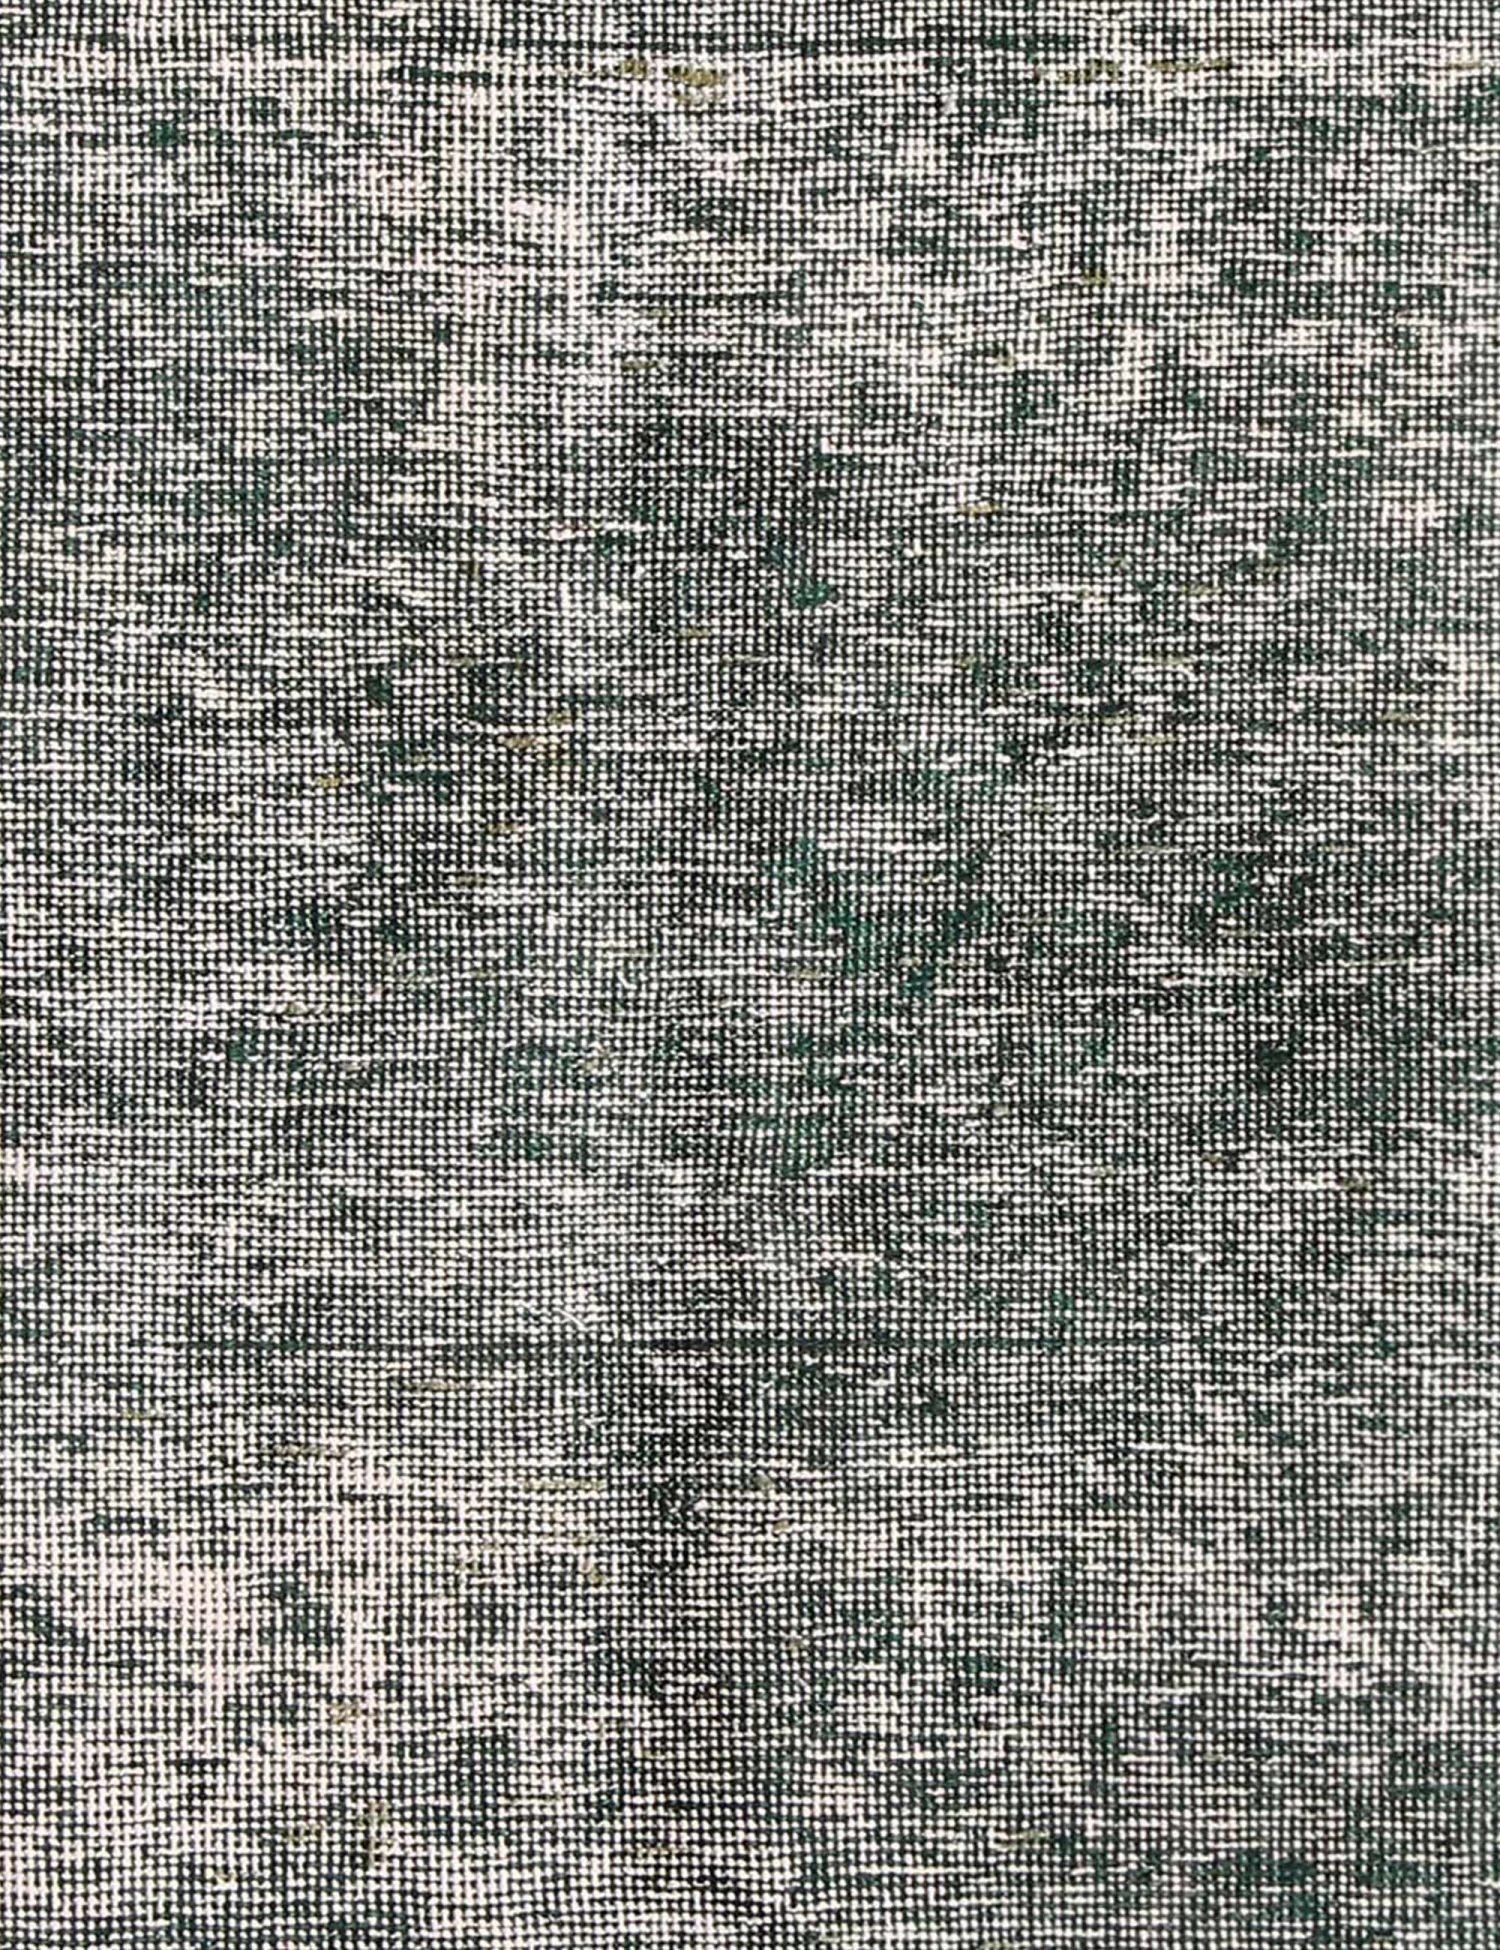 Persischer Vintage Teppich  grün <br/>145 x 100 cm